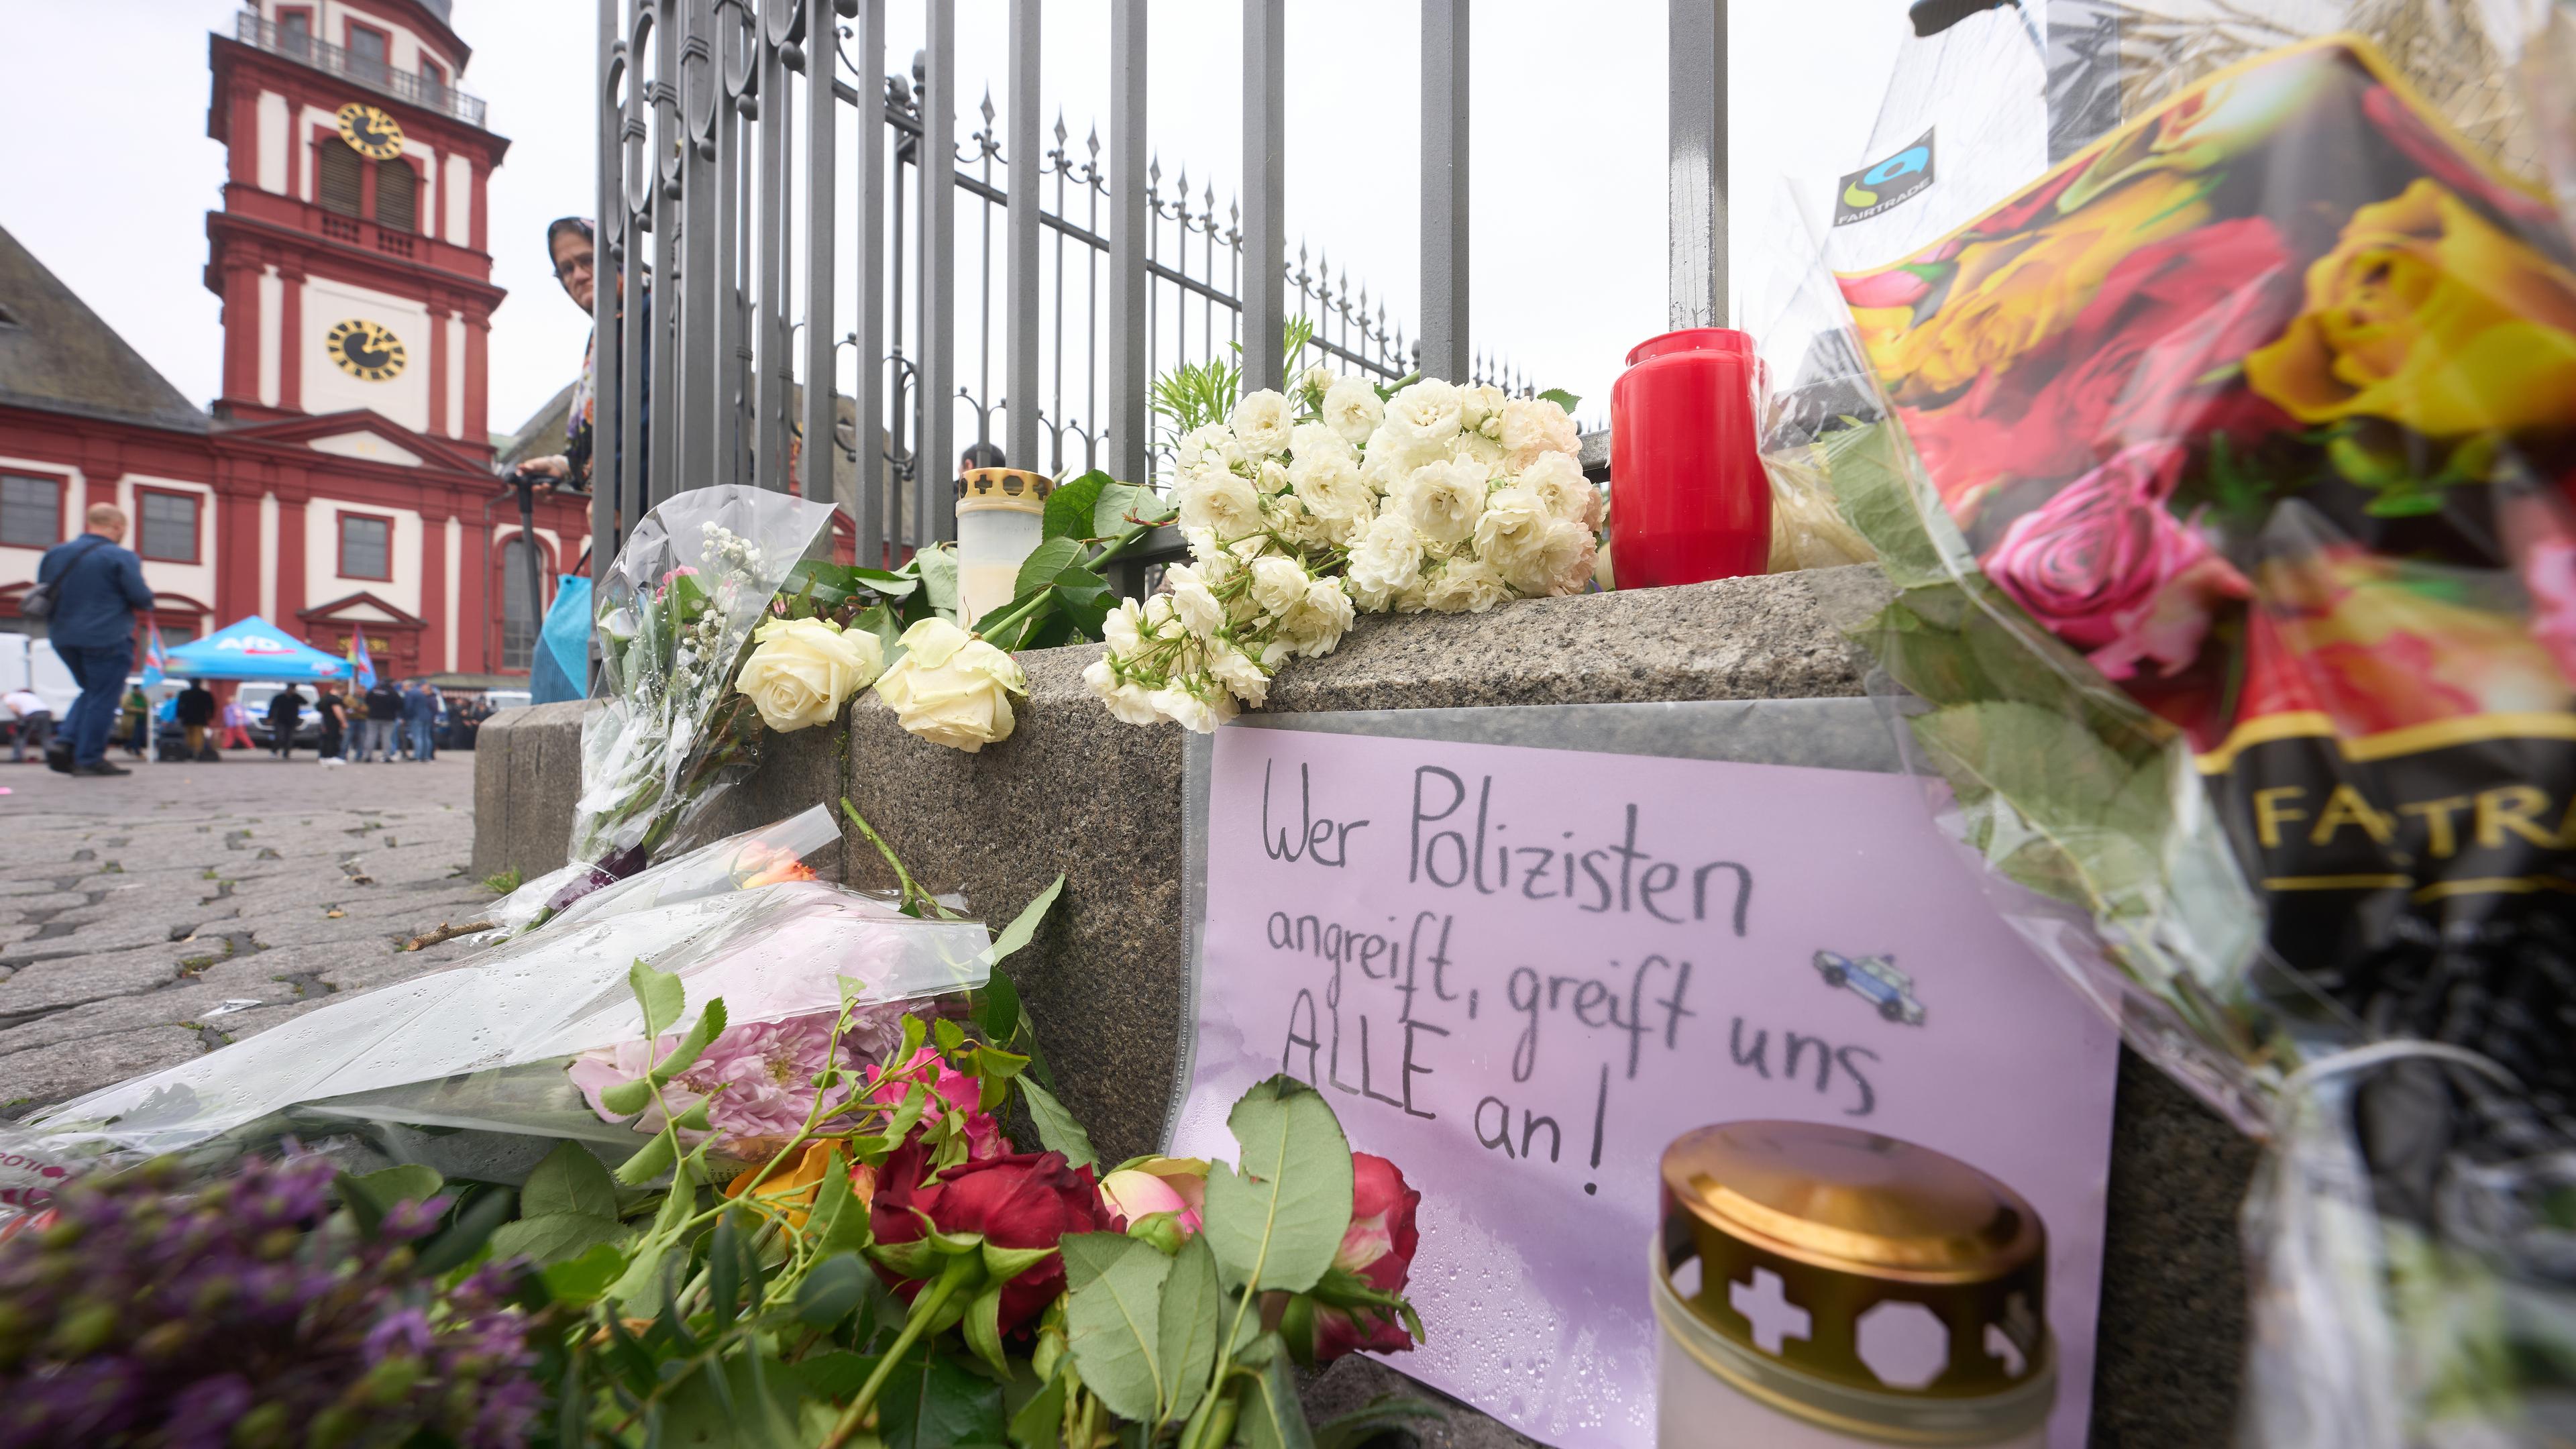 Nach der Messerattacke mit mehreren Verletzten und einem Todesopfer in Mannheim erinnern Kerzen und Blumen an die Opfer.